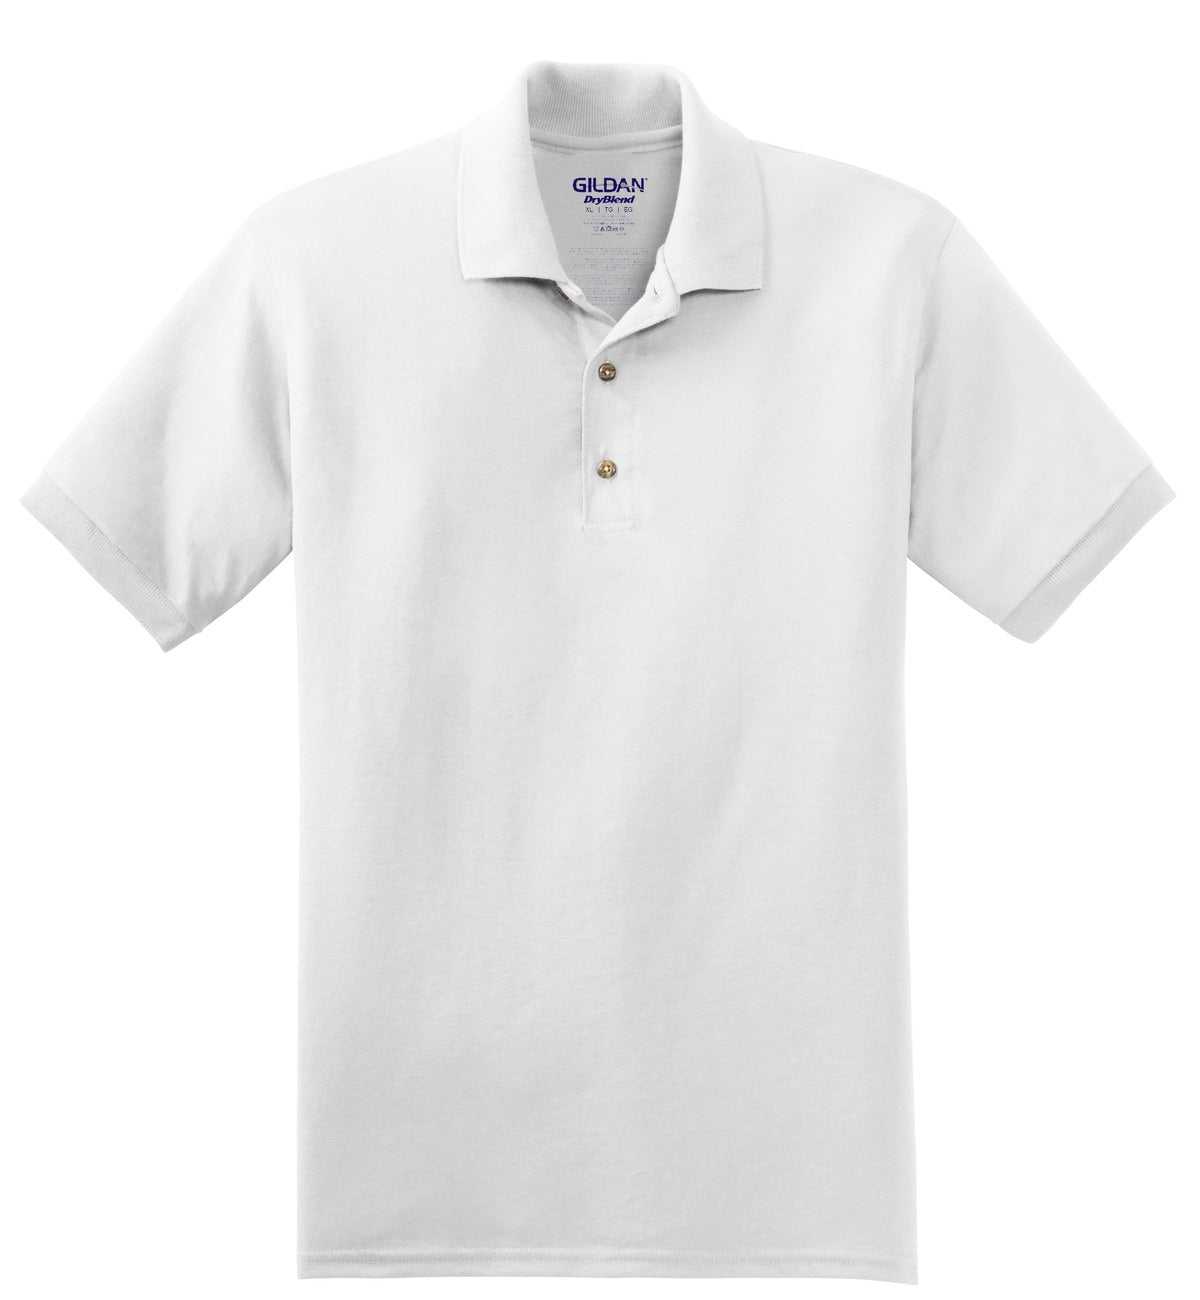 Gildan 8800 Dryblend 6-Ounce Jersey Knit Sport Shirt - White - HIT a Double